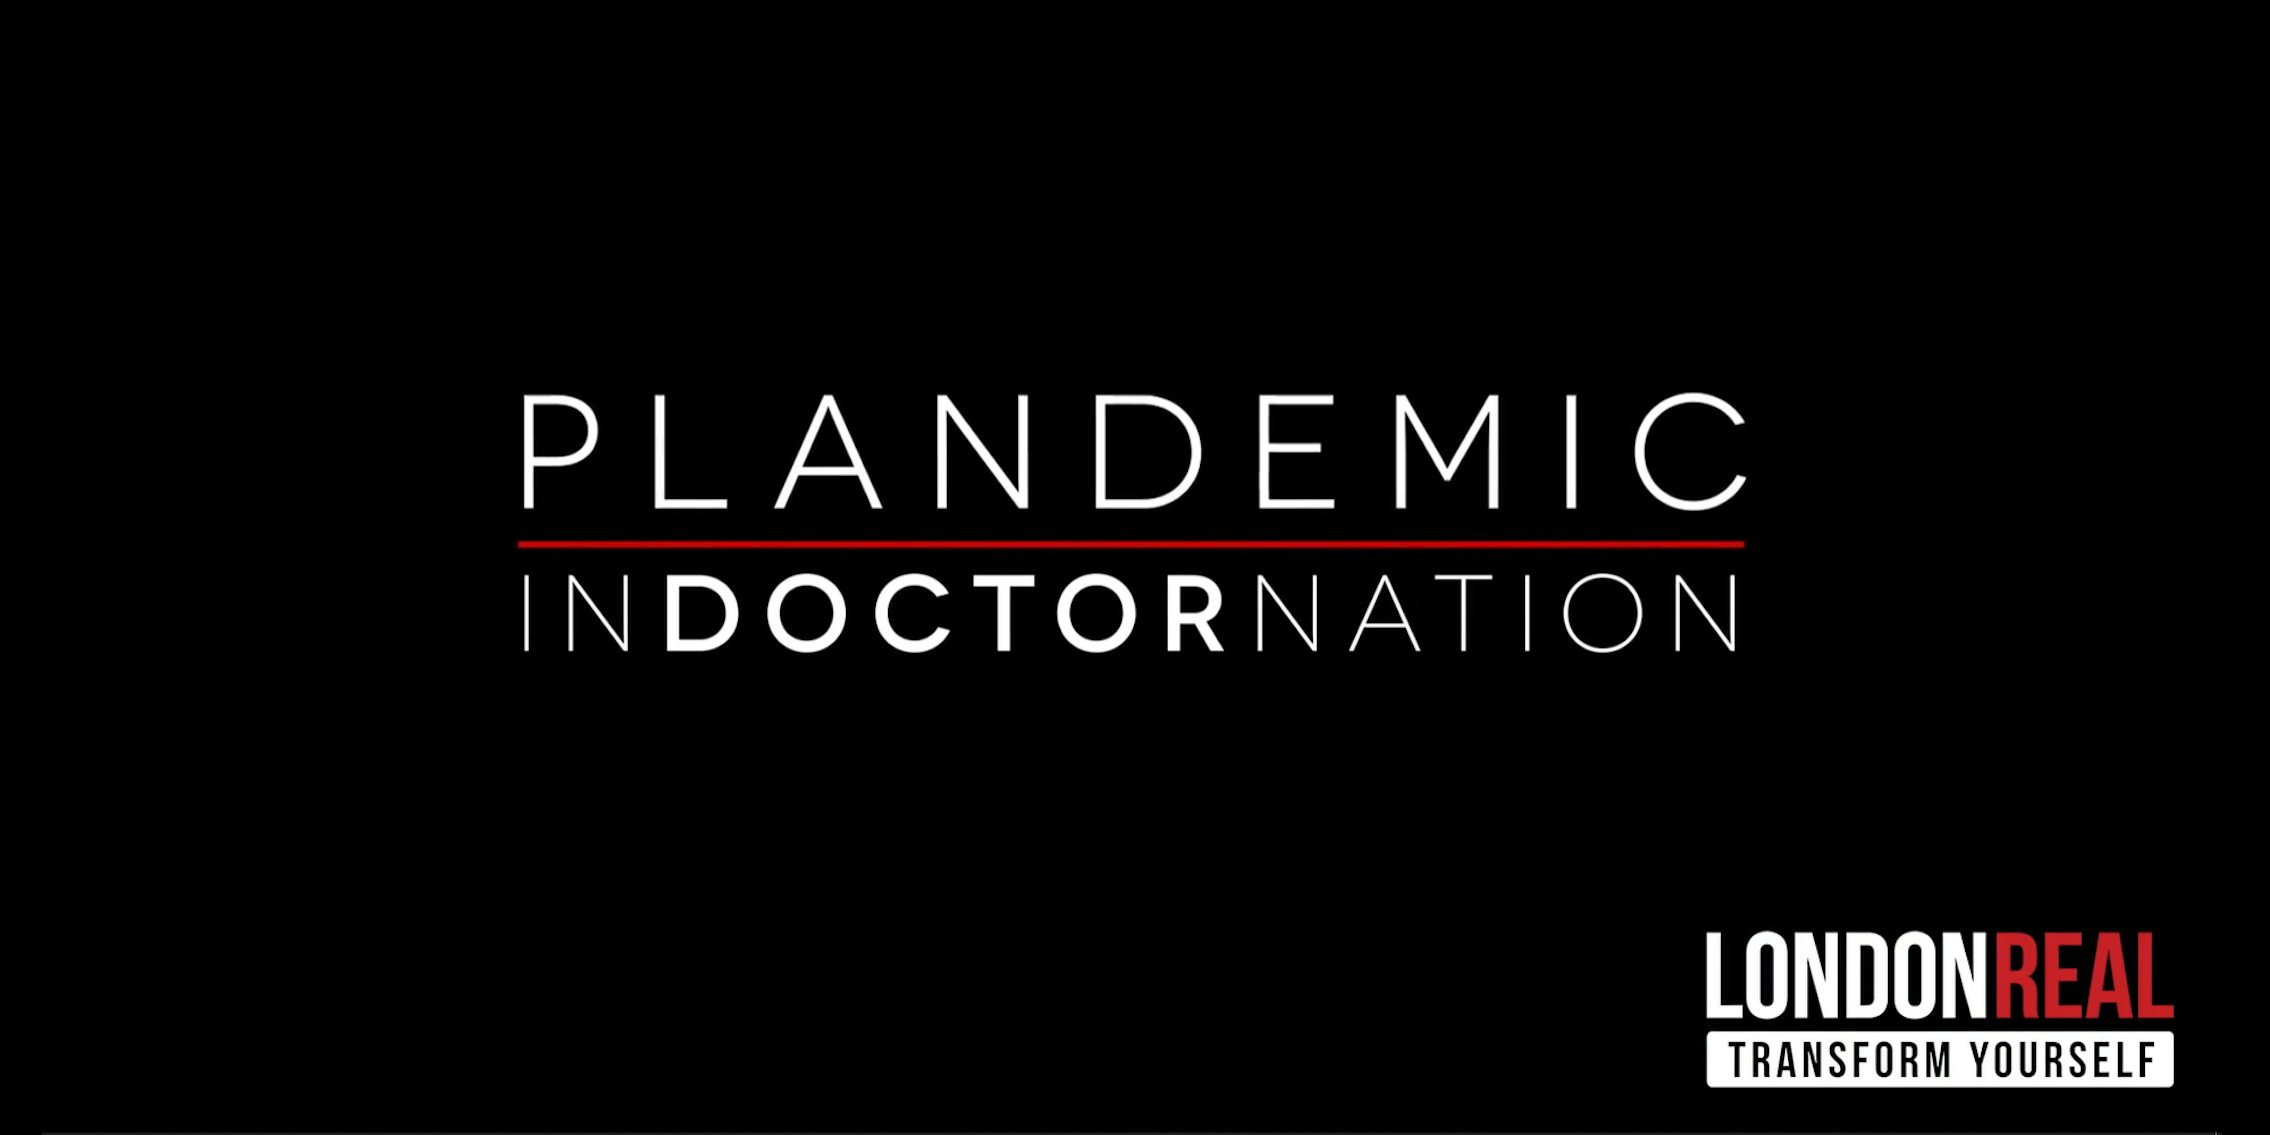 plandemic indoctornation